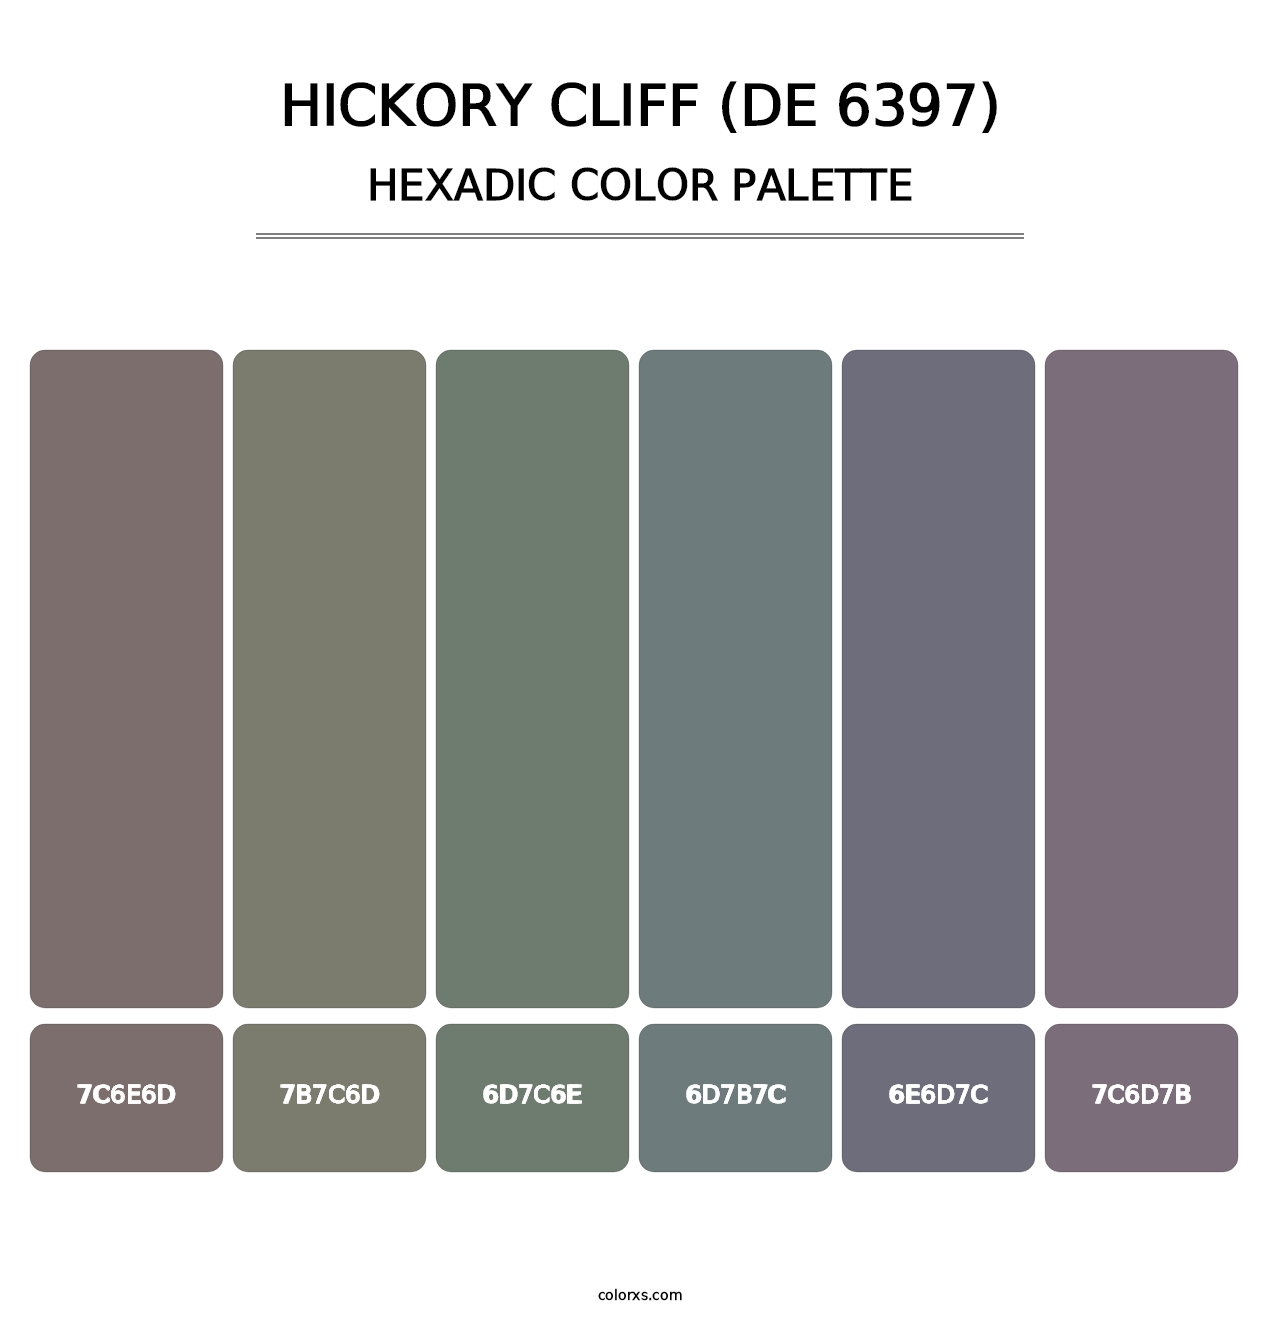 Hickory Cliff (DE 6397) - Hexadic Color Palette